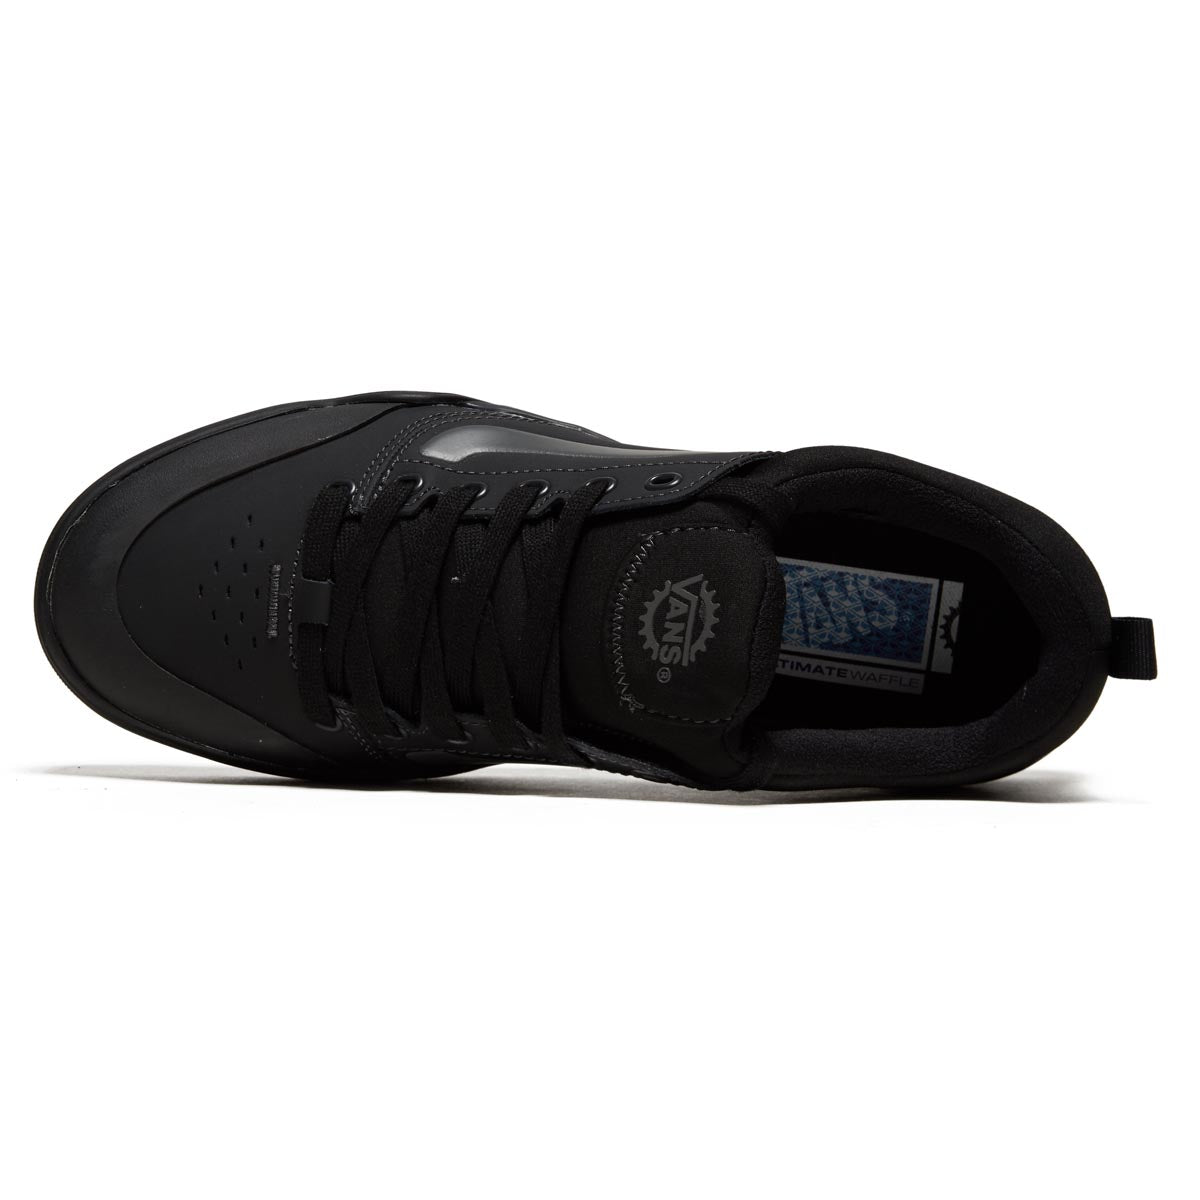 Vans BMX Peak Shoes - Black/Black image 3